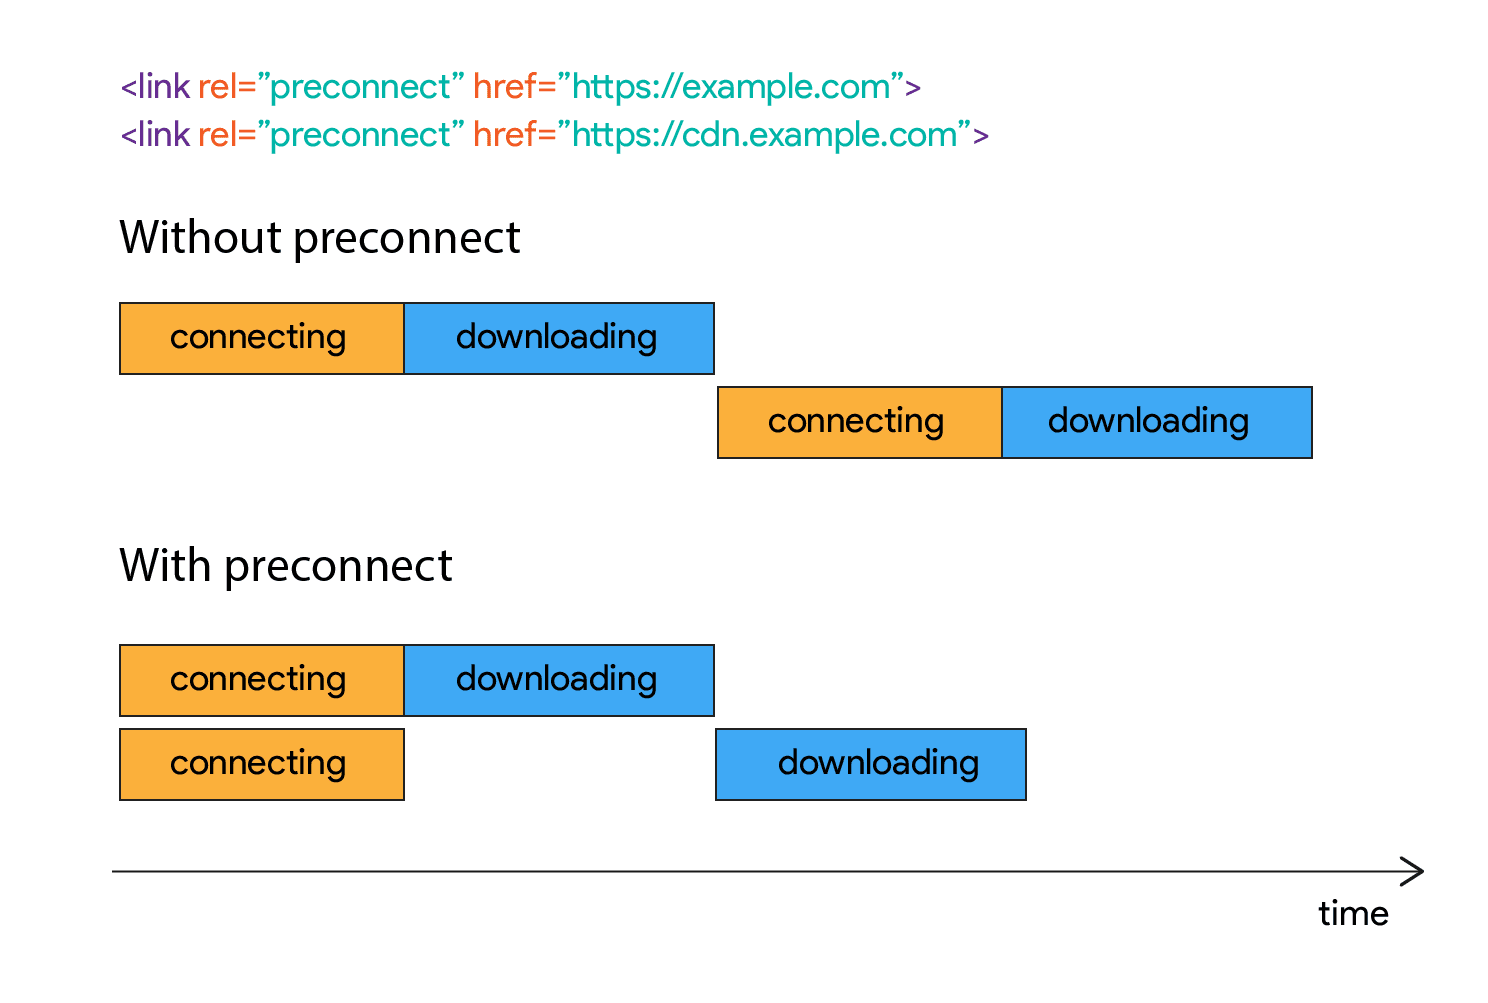 इस डायग्राम में दिखाया गया है कि कनेक्ट होने के बाद, कुछ देर तक डाउनलोड कैसे शुरू नहीं होता.